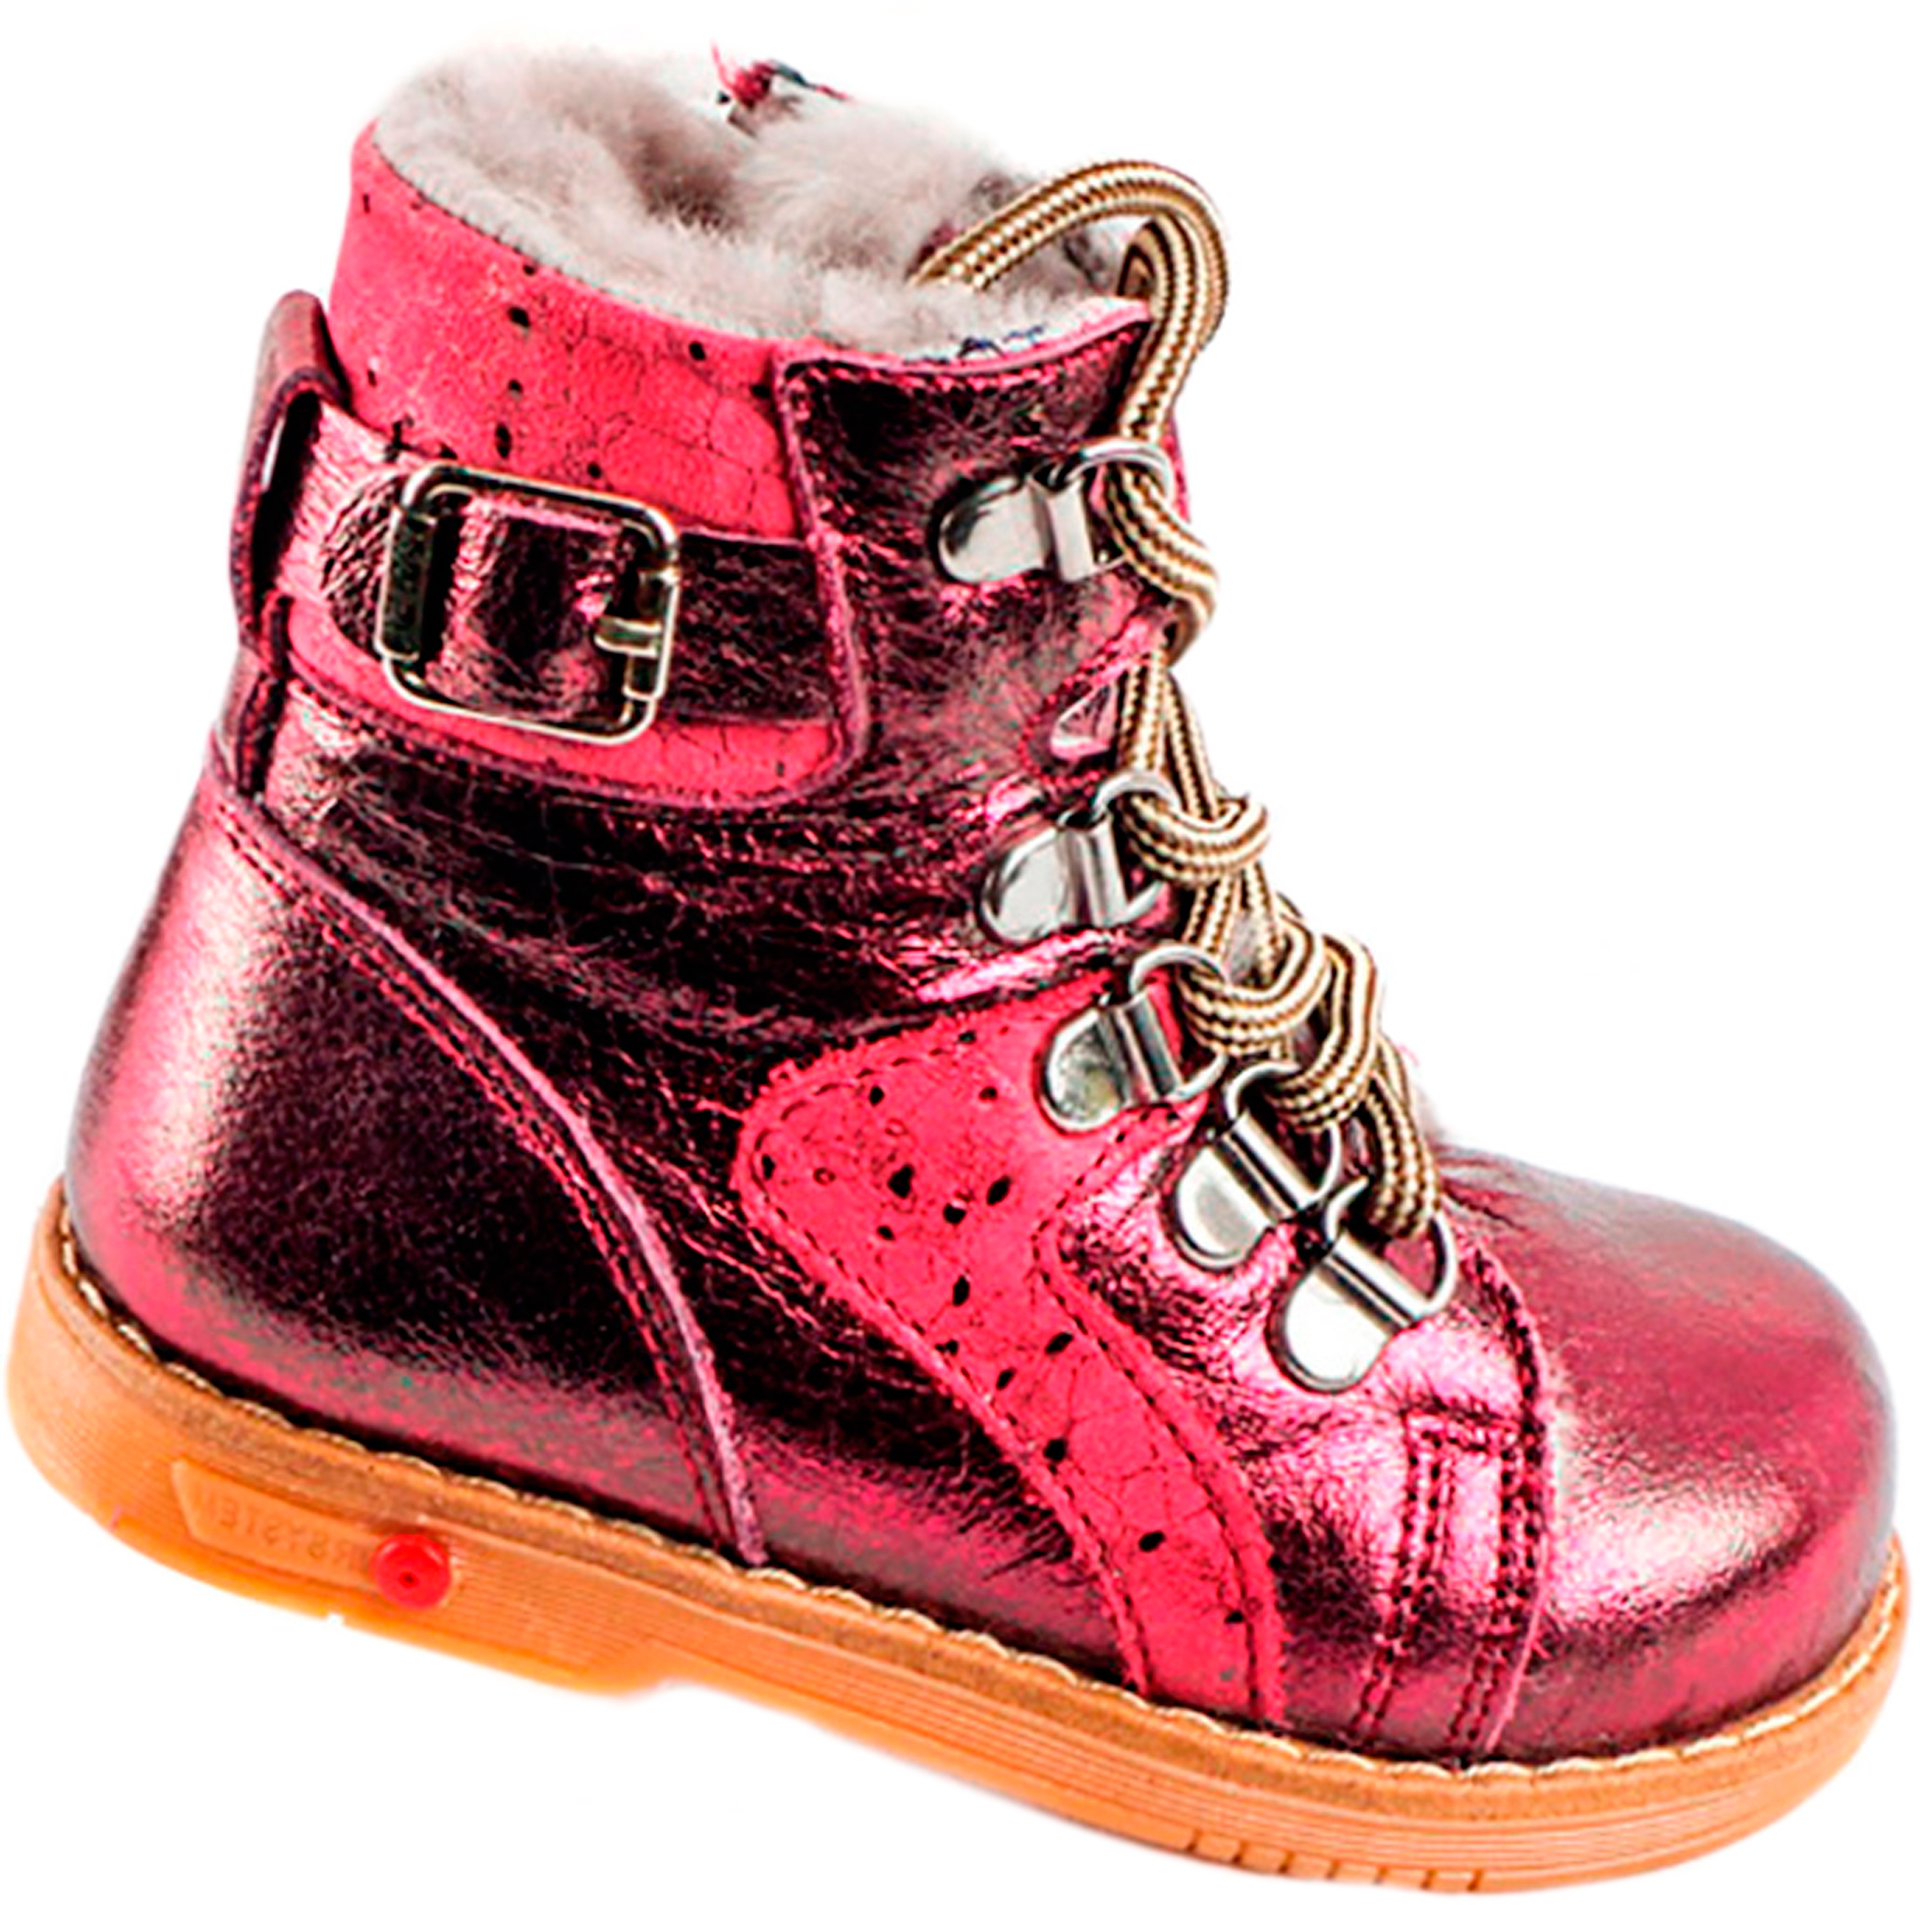 Tutubi Зимові черевики дитячі (1269) для дівчинки, матеріал Натуральна шкіра, Червоний колір, 21-29 розміри – Sole Kids